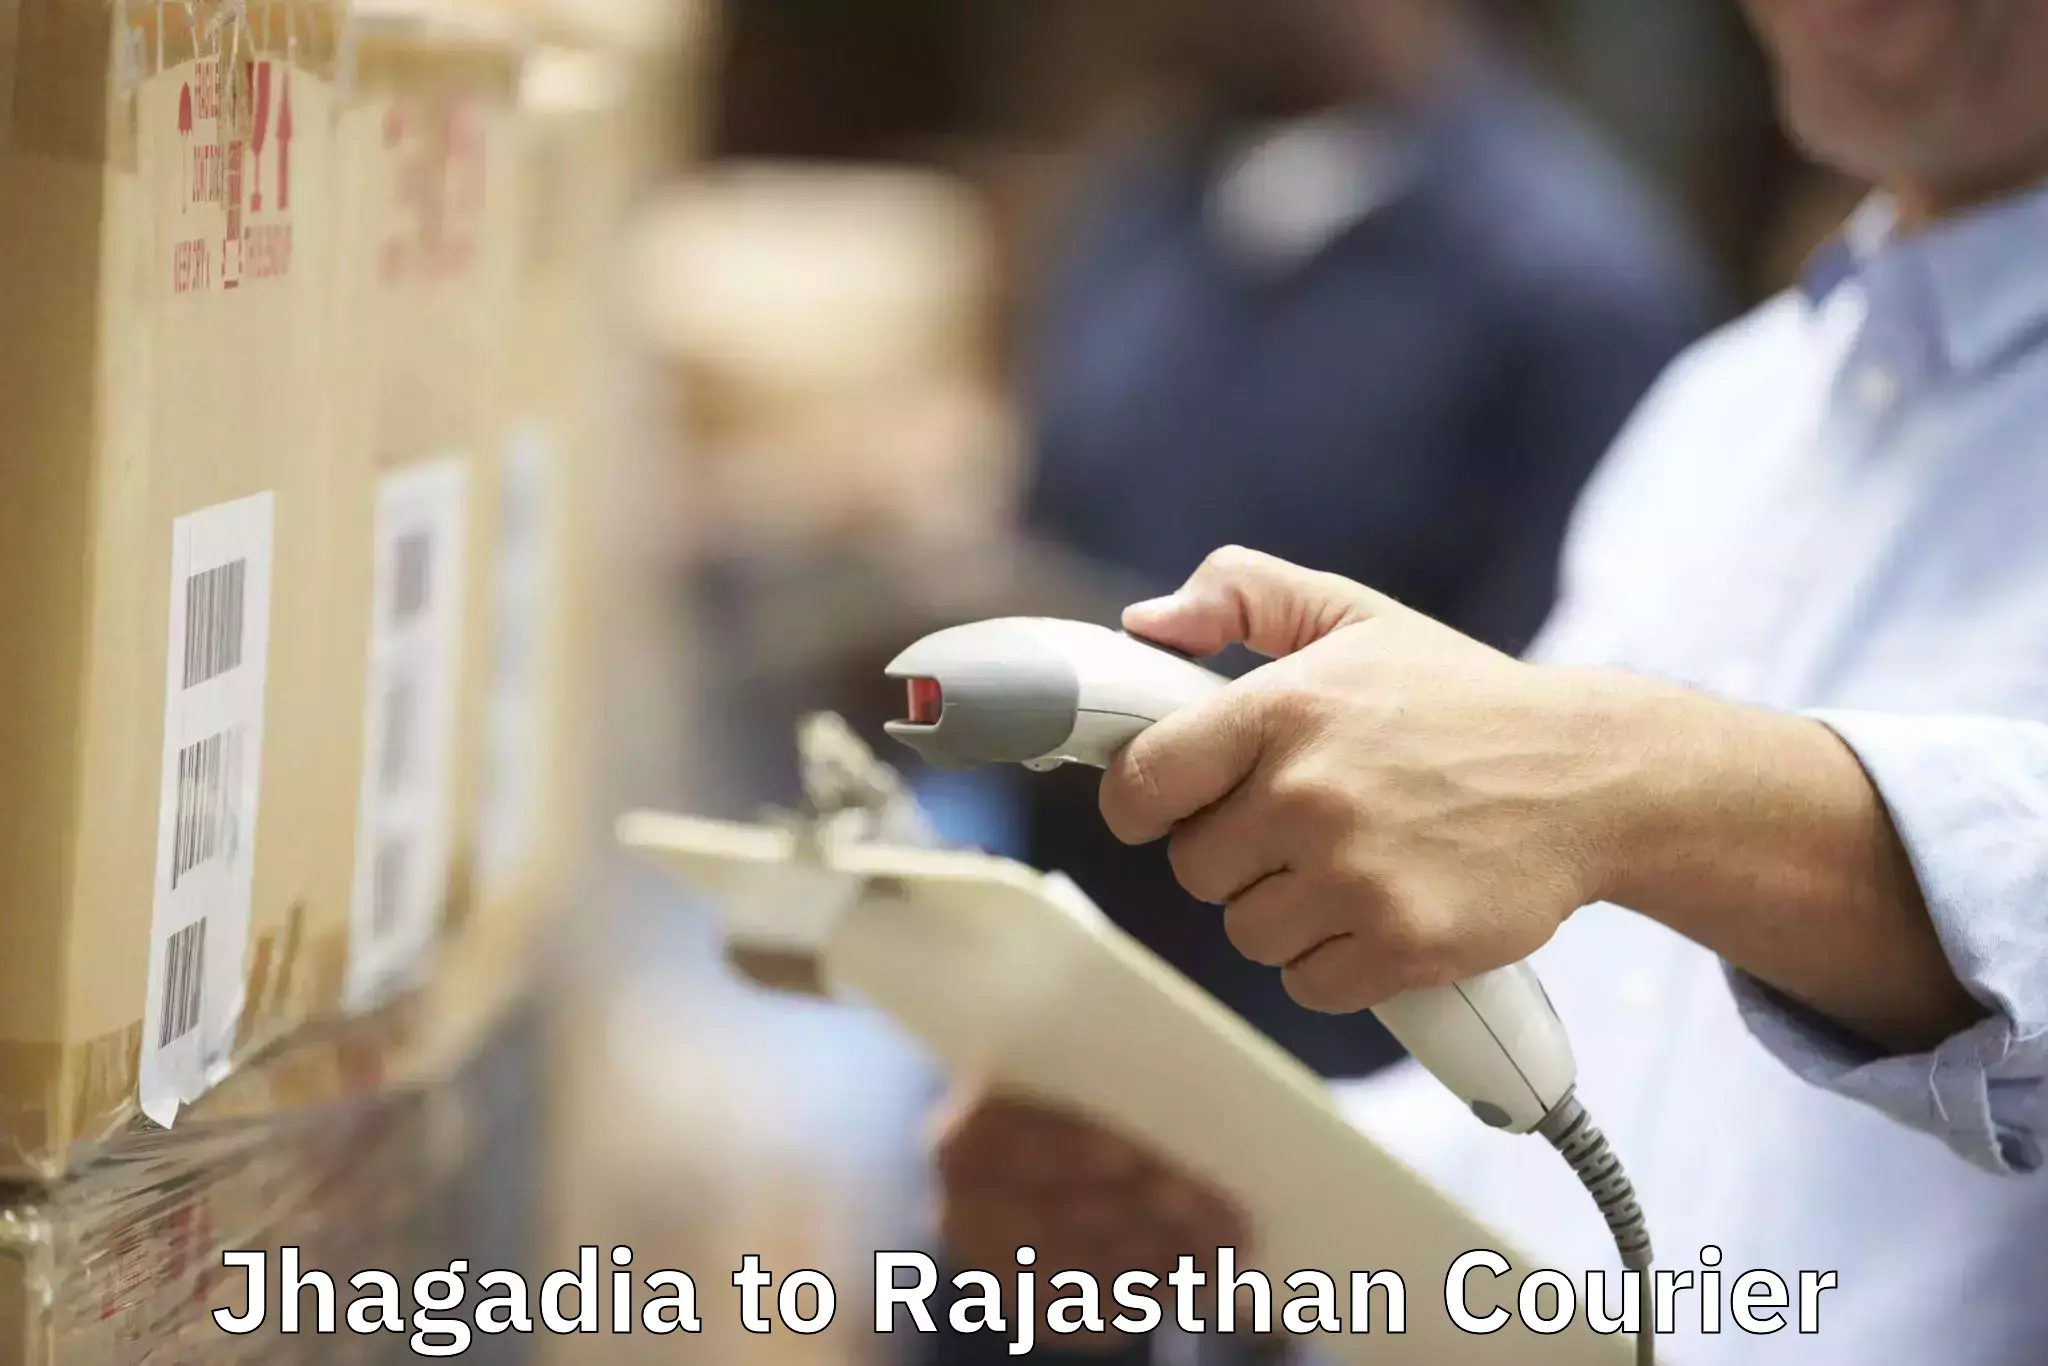 Customized furniture moving Jhagadia to Pratapgarh Rajasthan